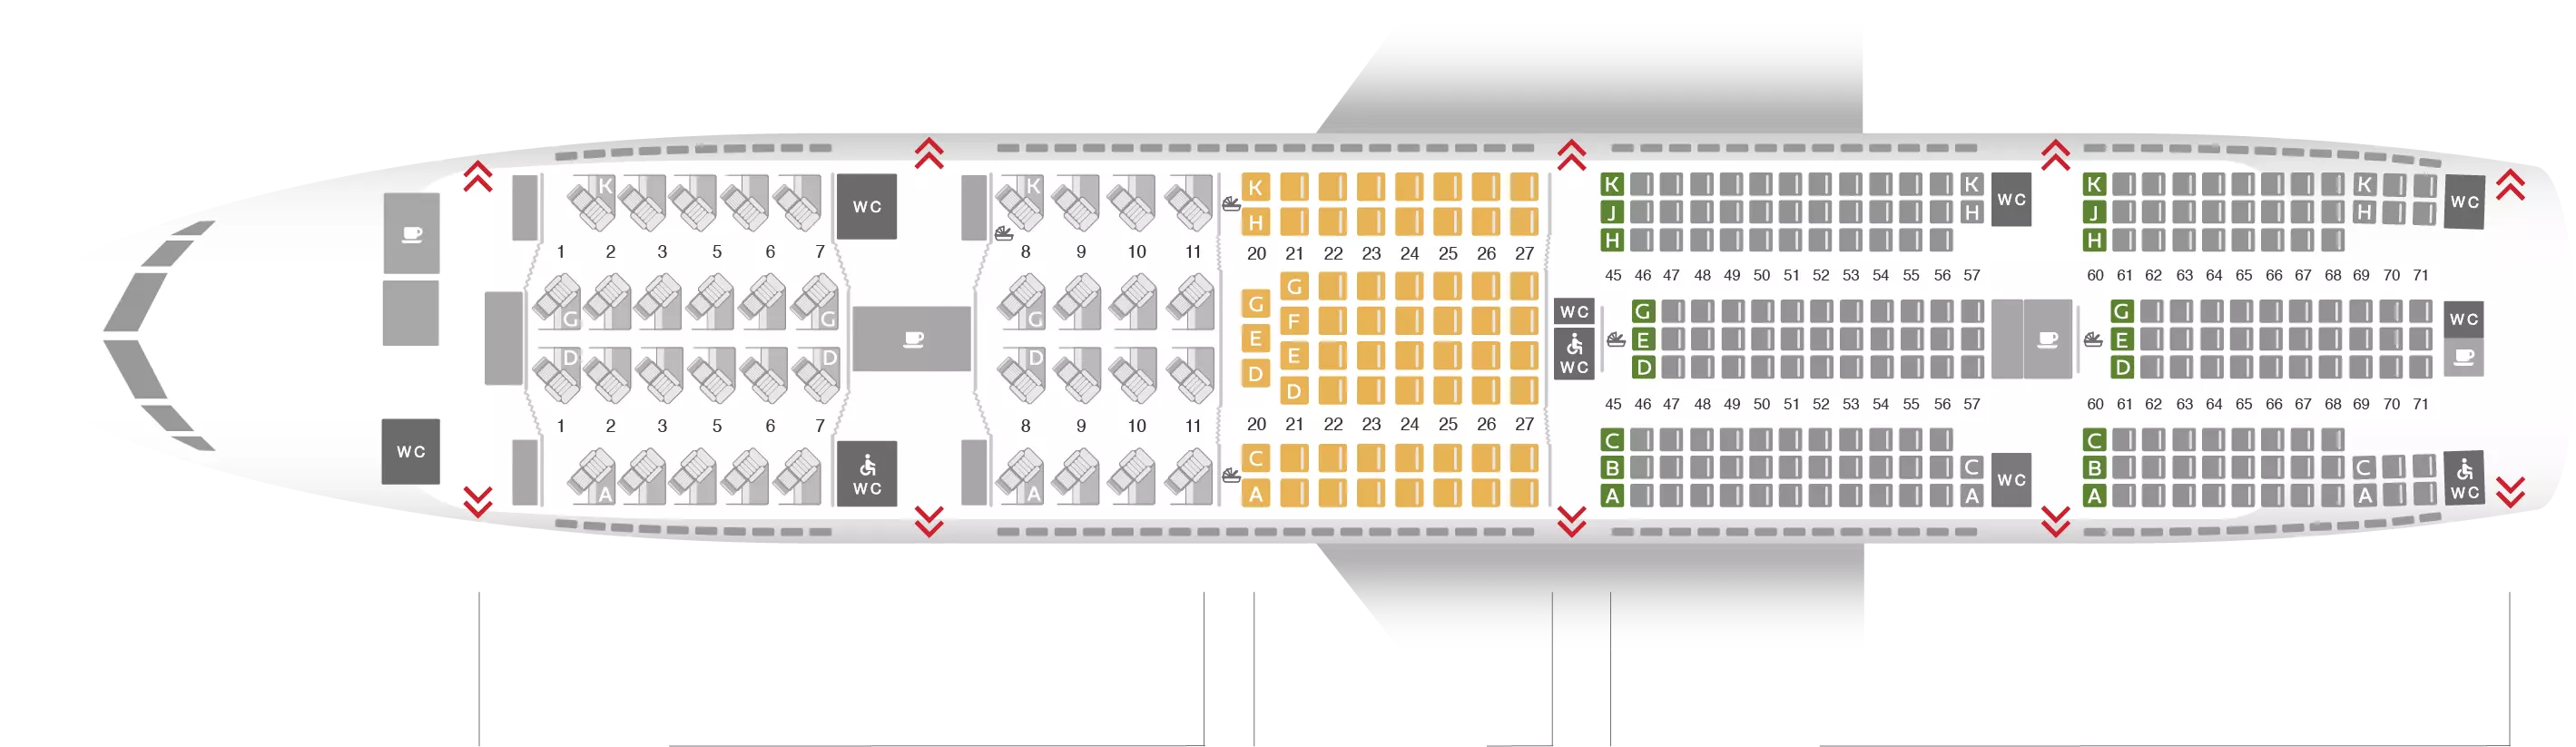 Описание и схема салона пассажирского авиалайнера boeing 777-300